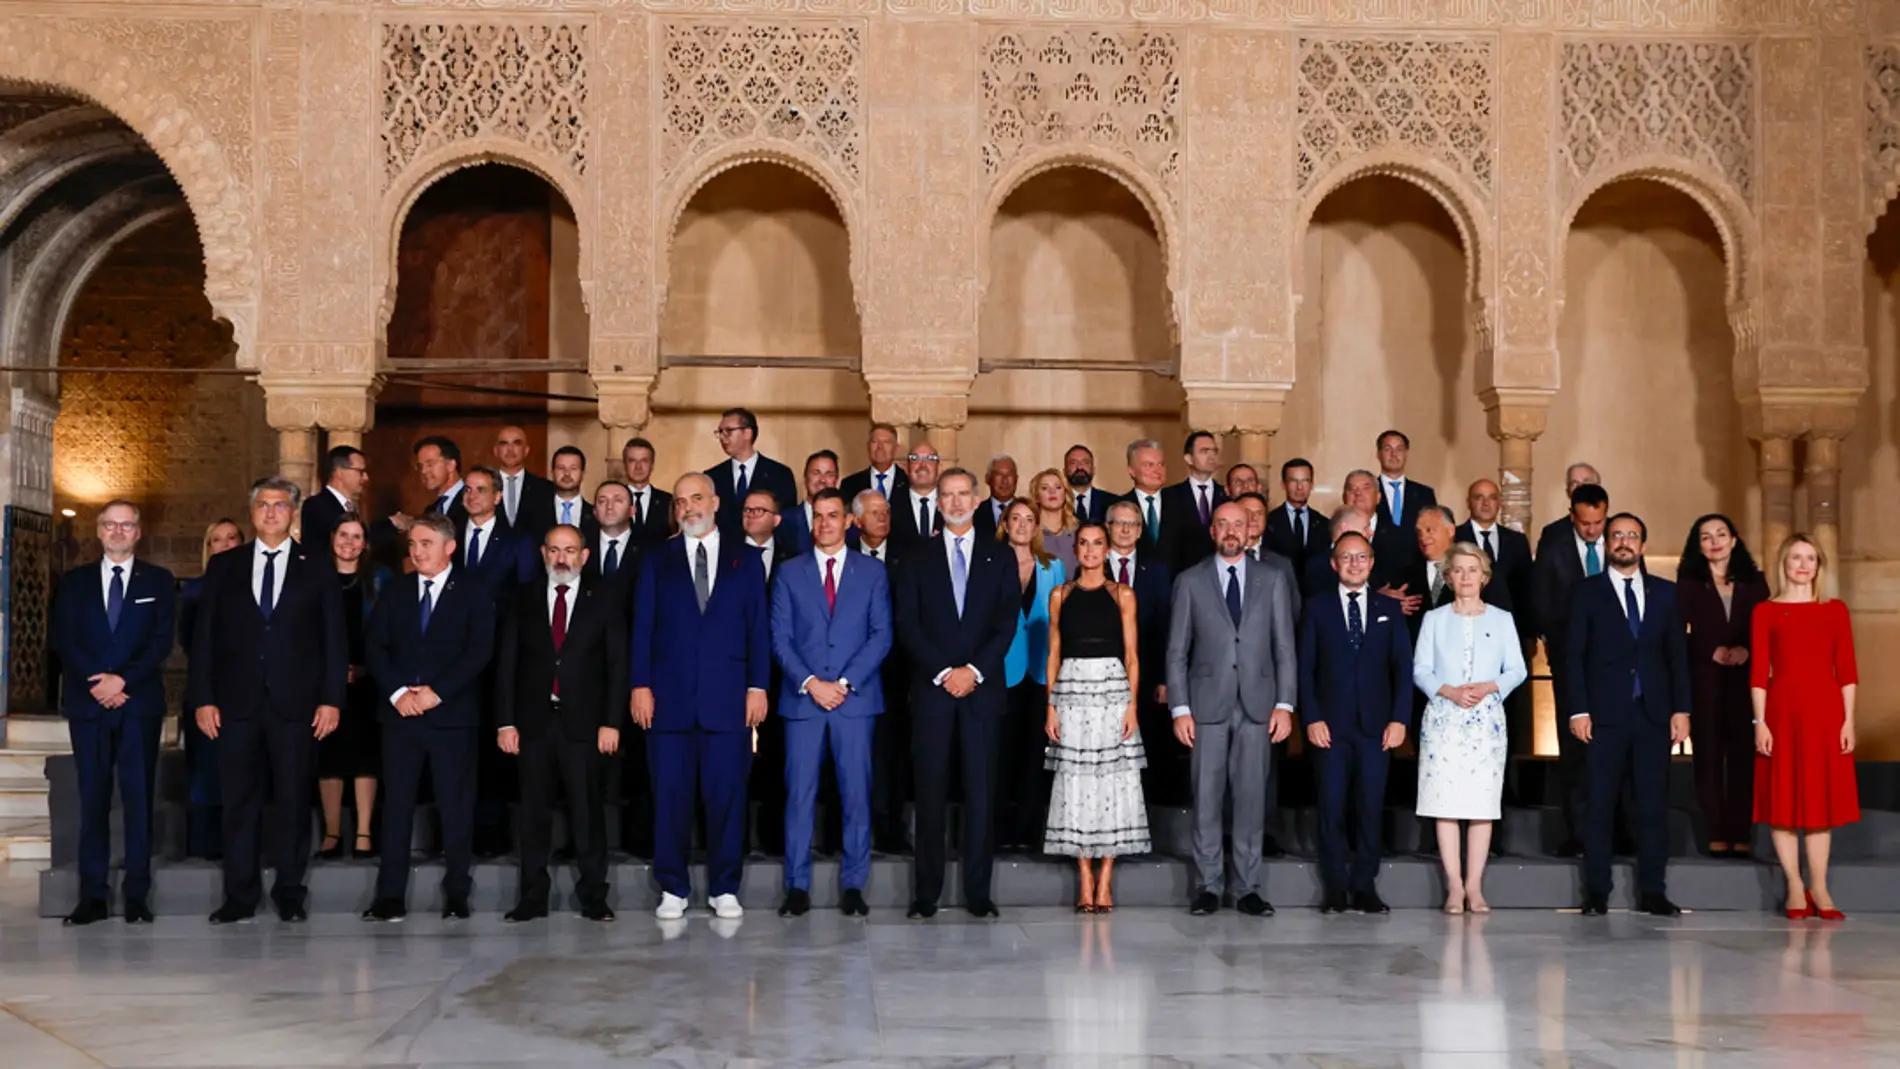 Los Reyes de España reciben a los mandatarios europeos en su visita al Patio de los Leones de la Alhambra dentro de la III Cumbre de la Comunidad Política Europea (CPE)